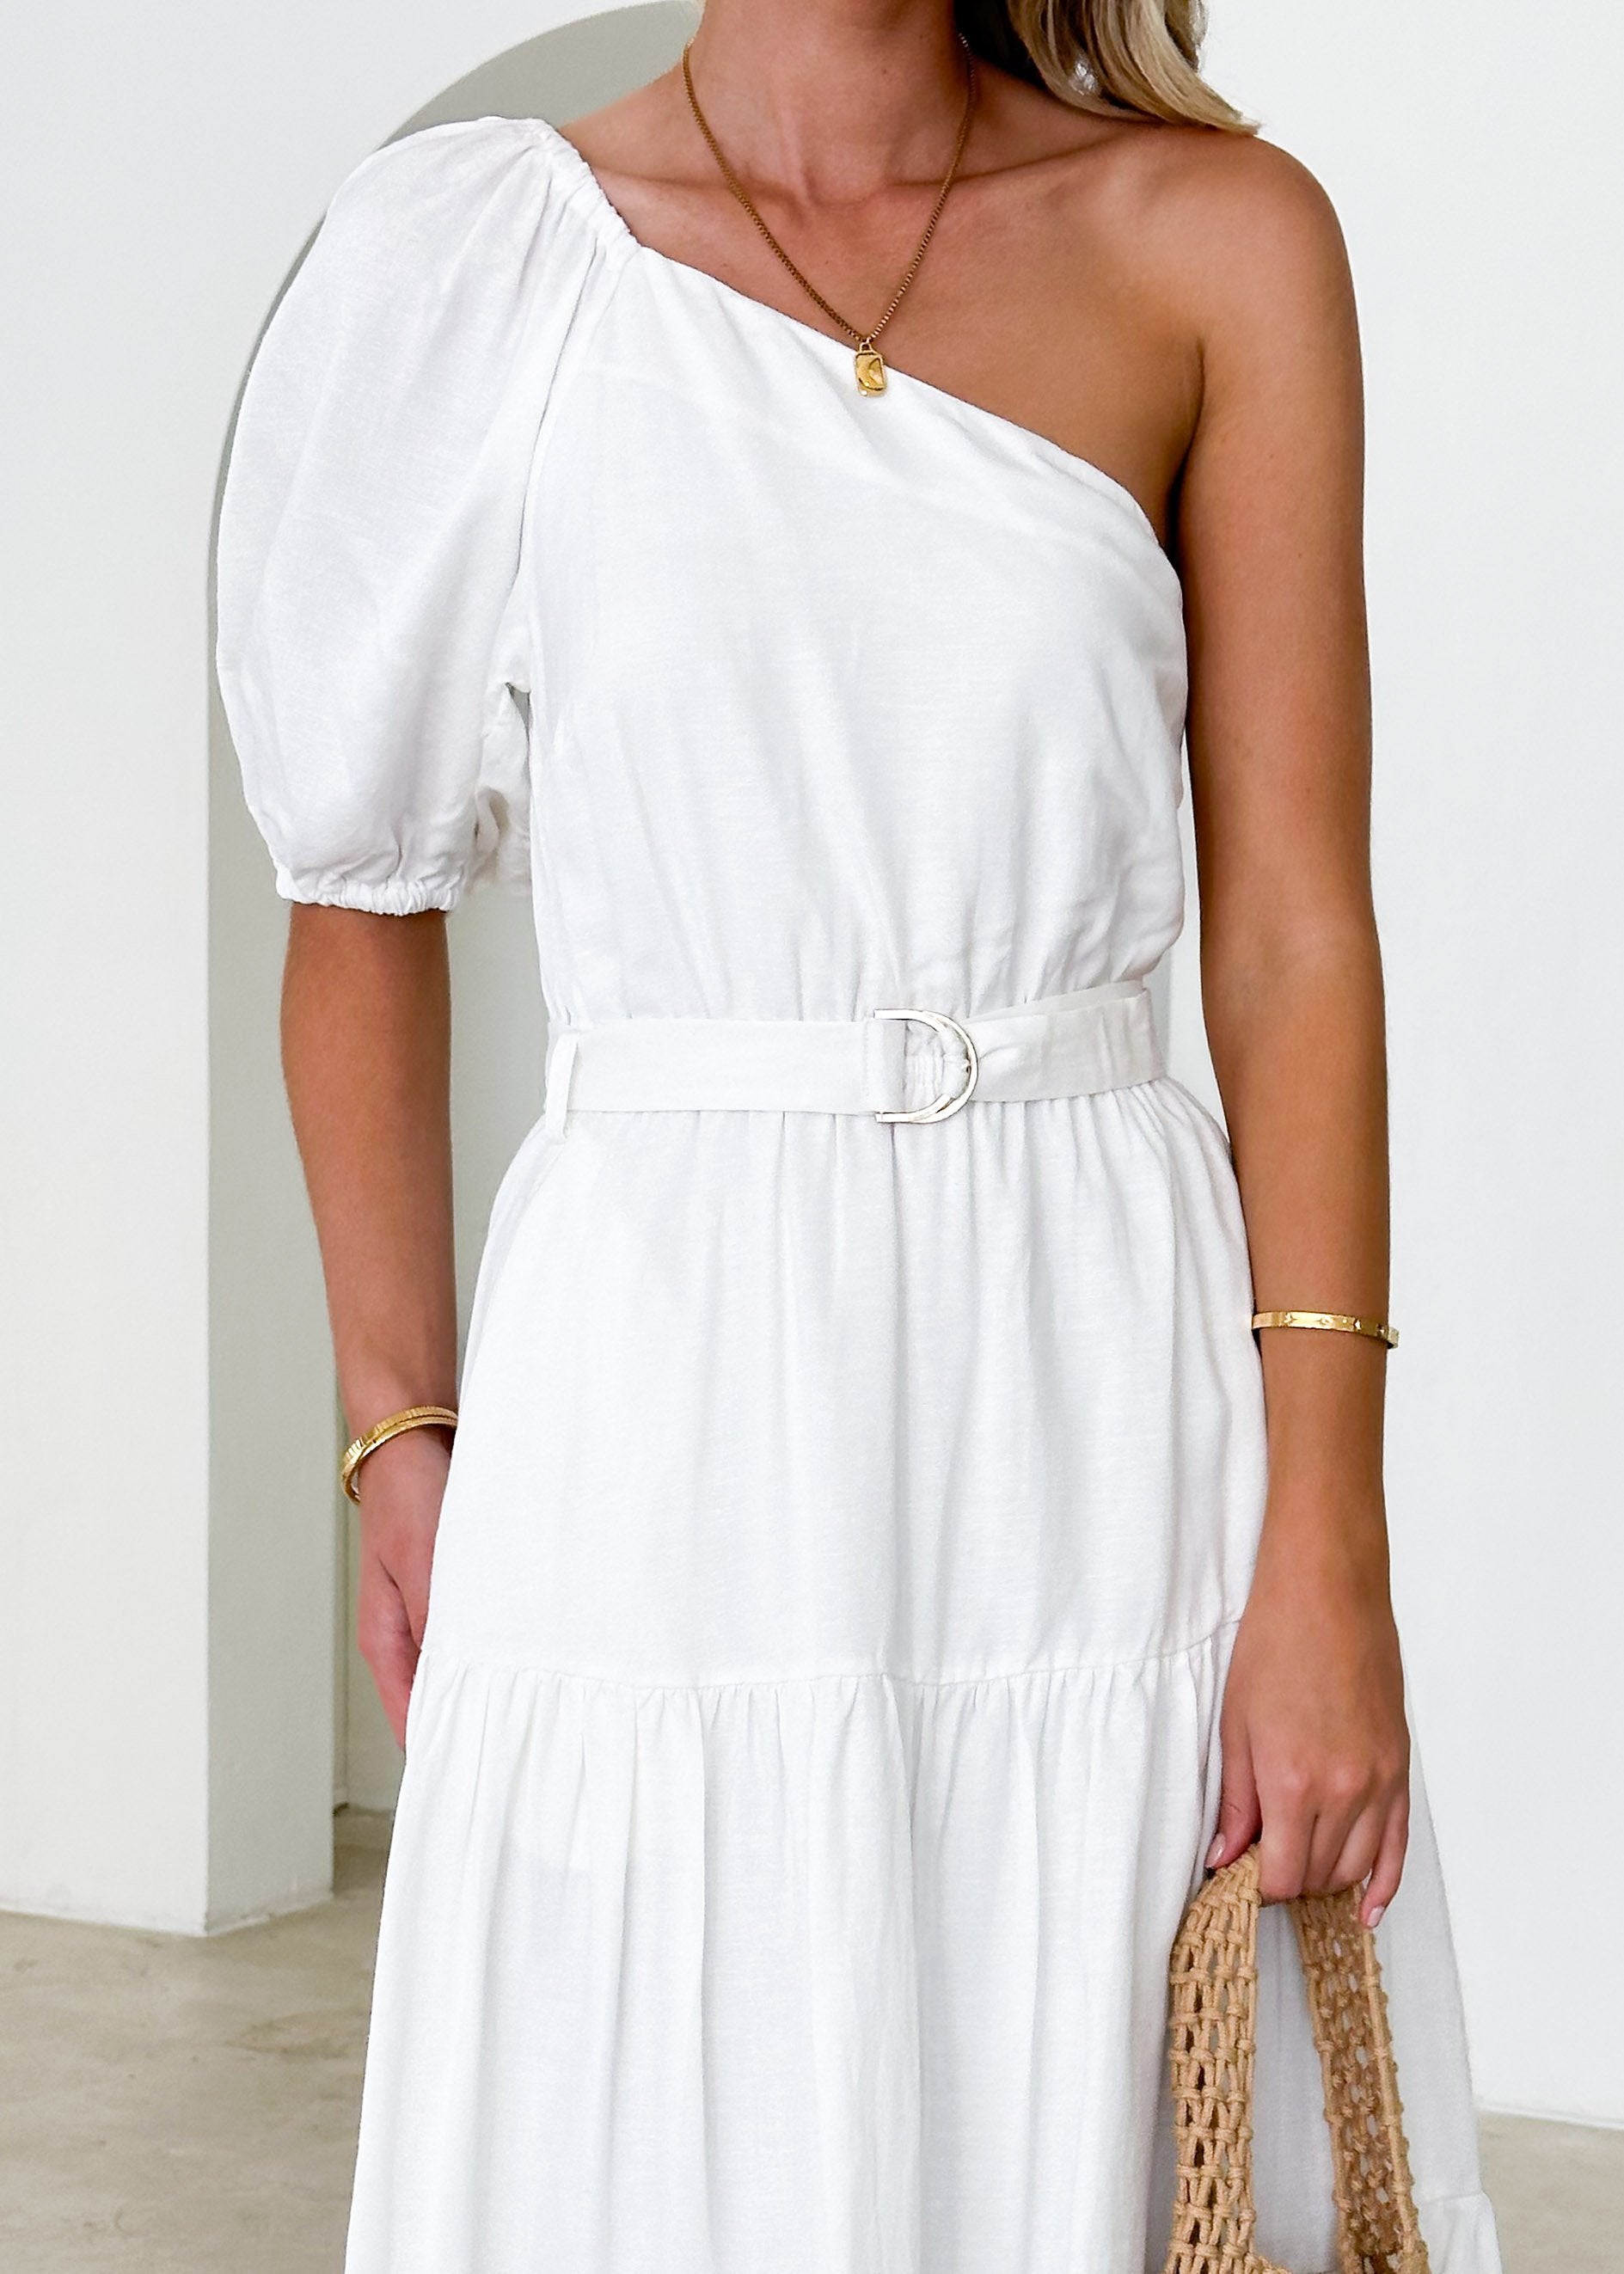 Jelai One Shoulder Midi Dress - Off White